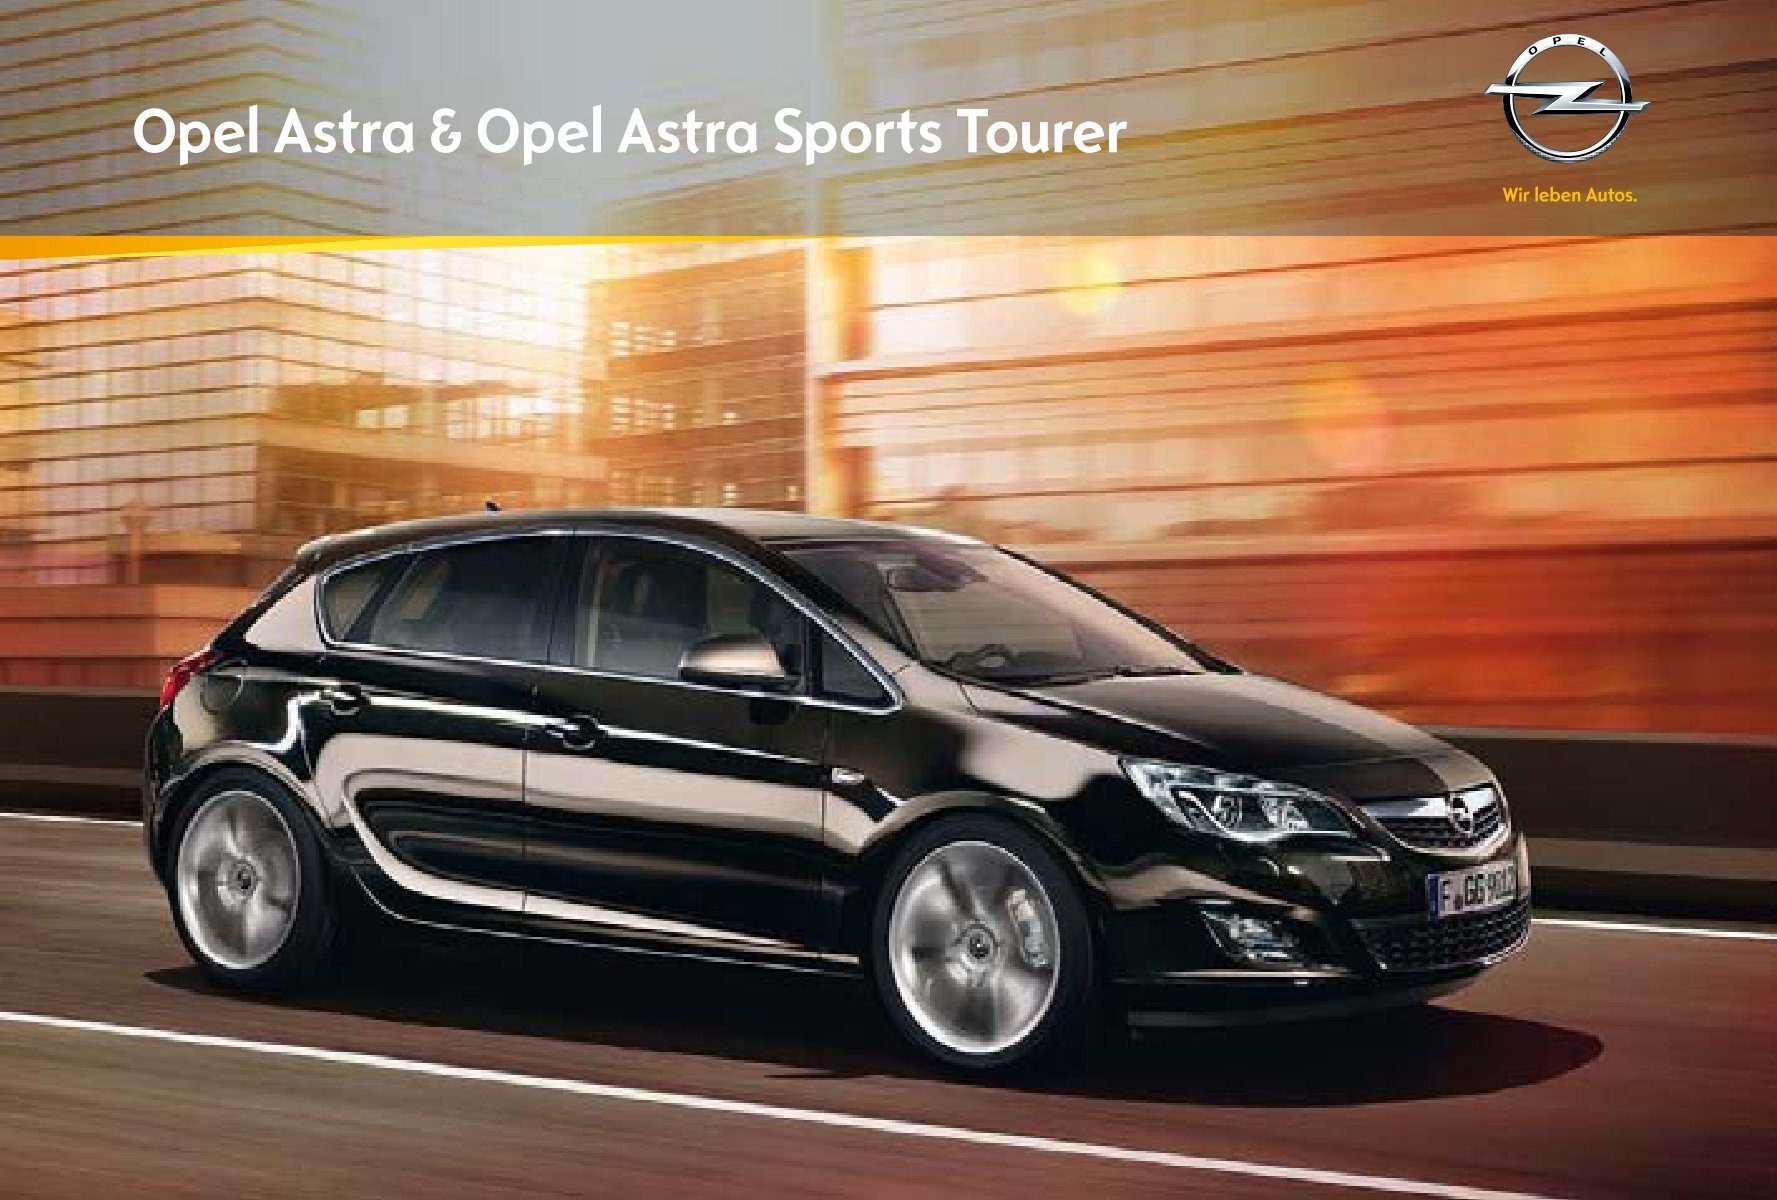 Buitengewoon onderschrift klap Brochure - Opel